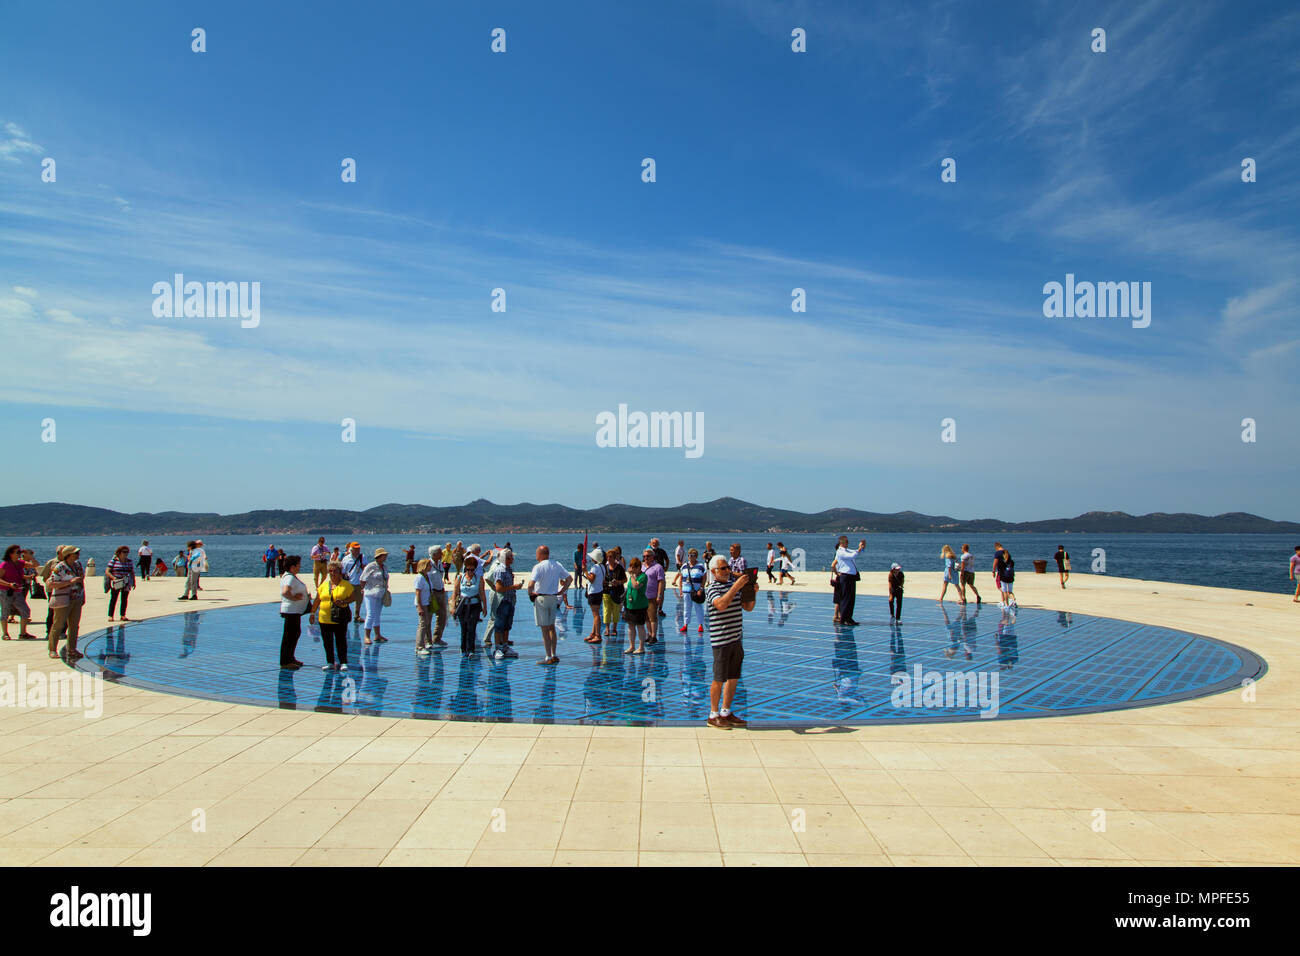 Villeggianti e turisti in piedi sul photovolt installazione, il monumento al sole nel porto di Zadar croazia Foto Stock